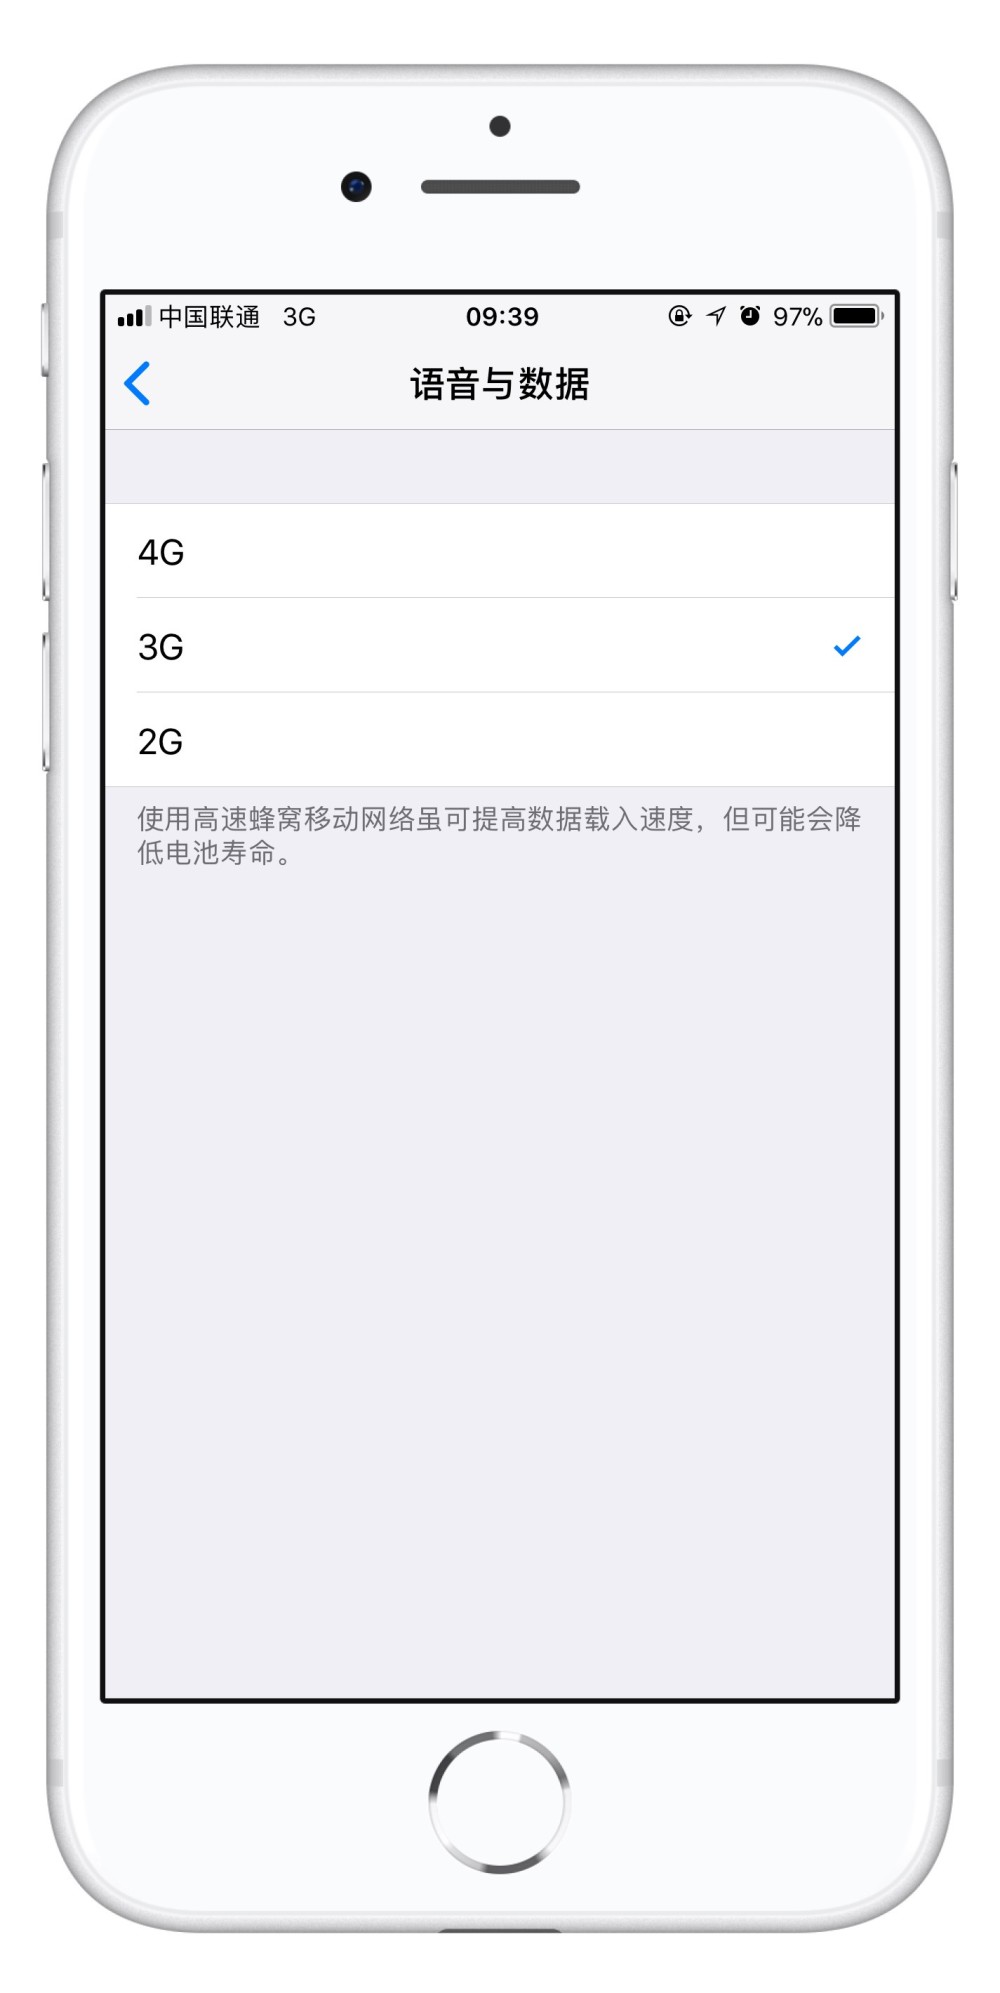 升级 iOS 13 Beta2 后联通、电信用户信号异常怎么办？插图5